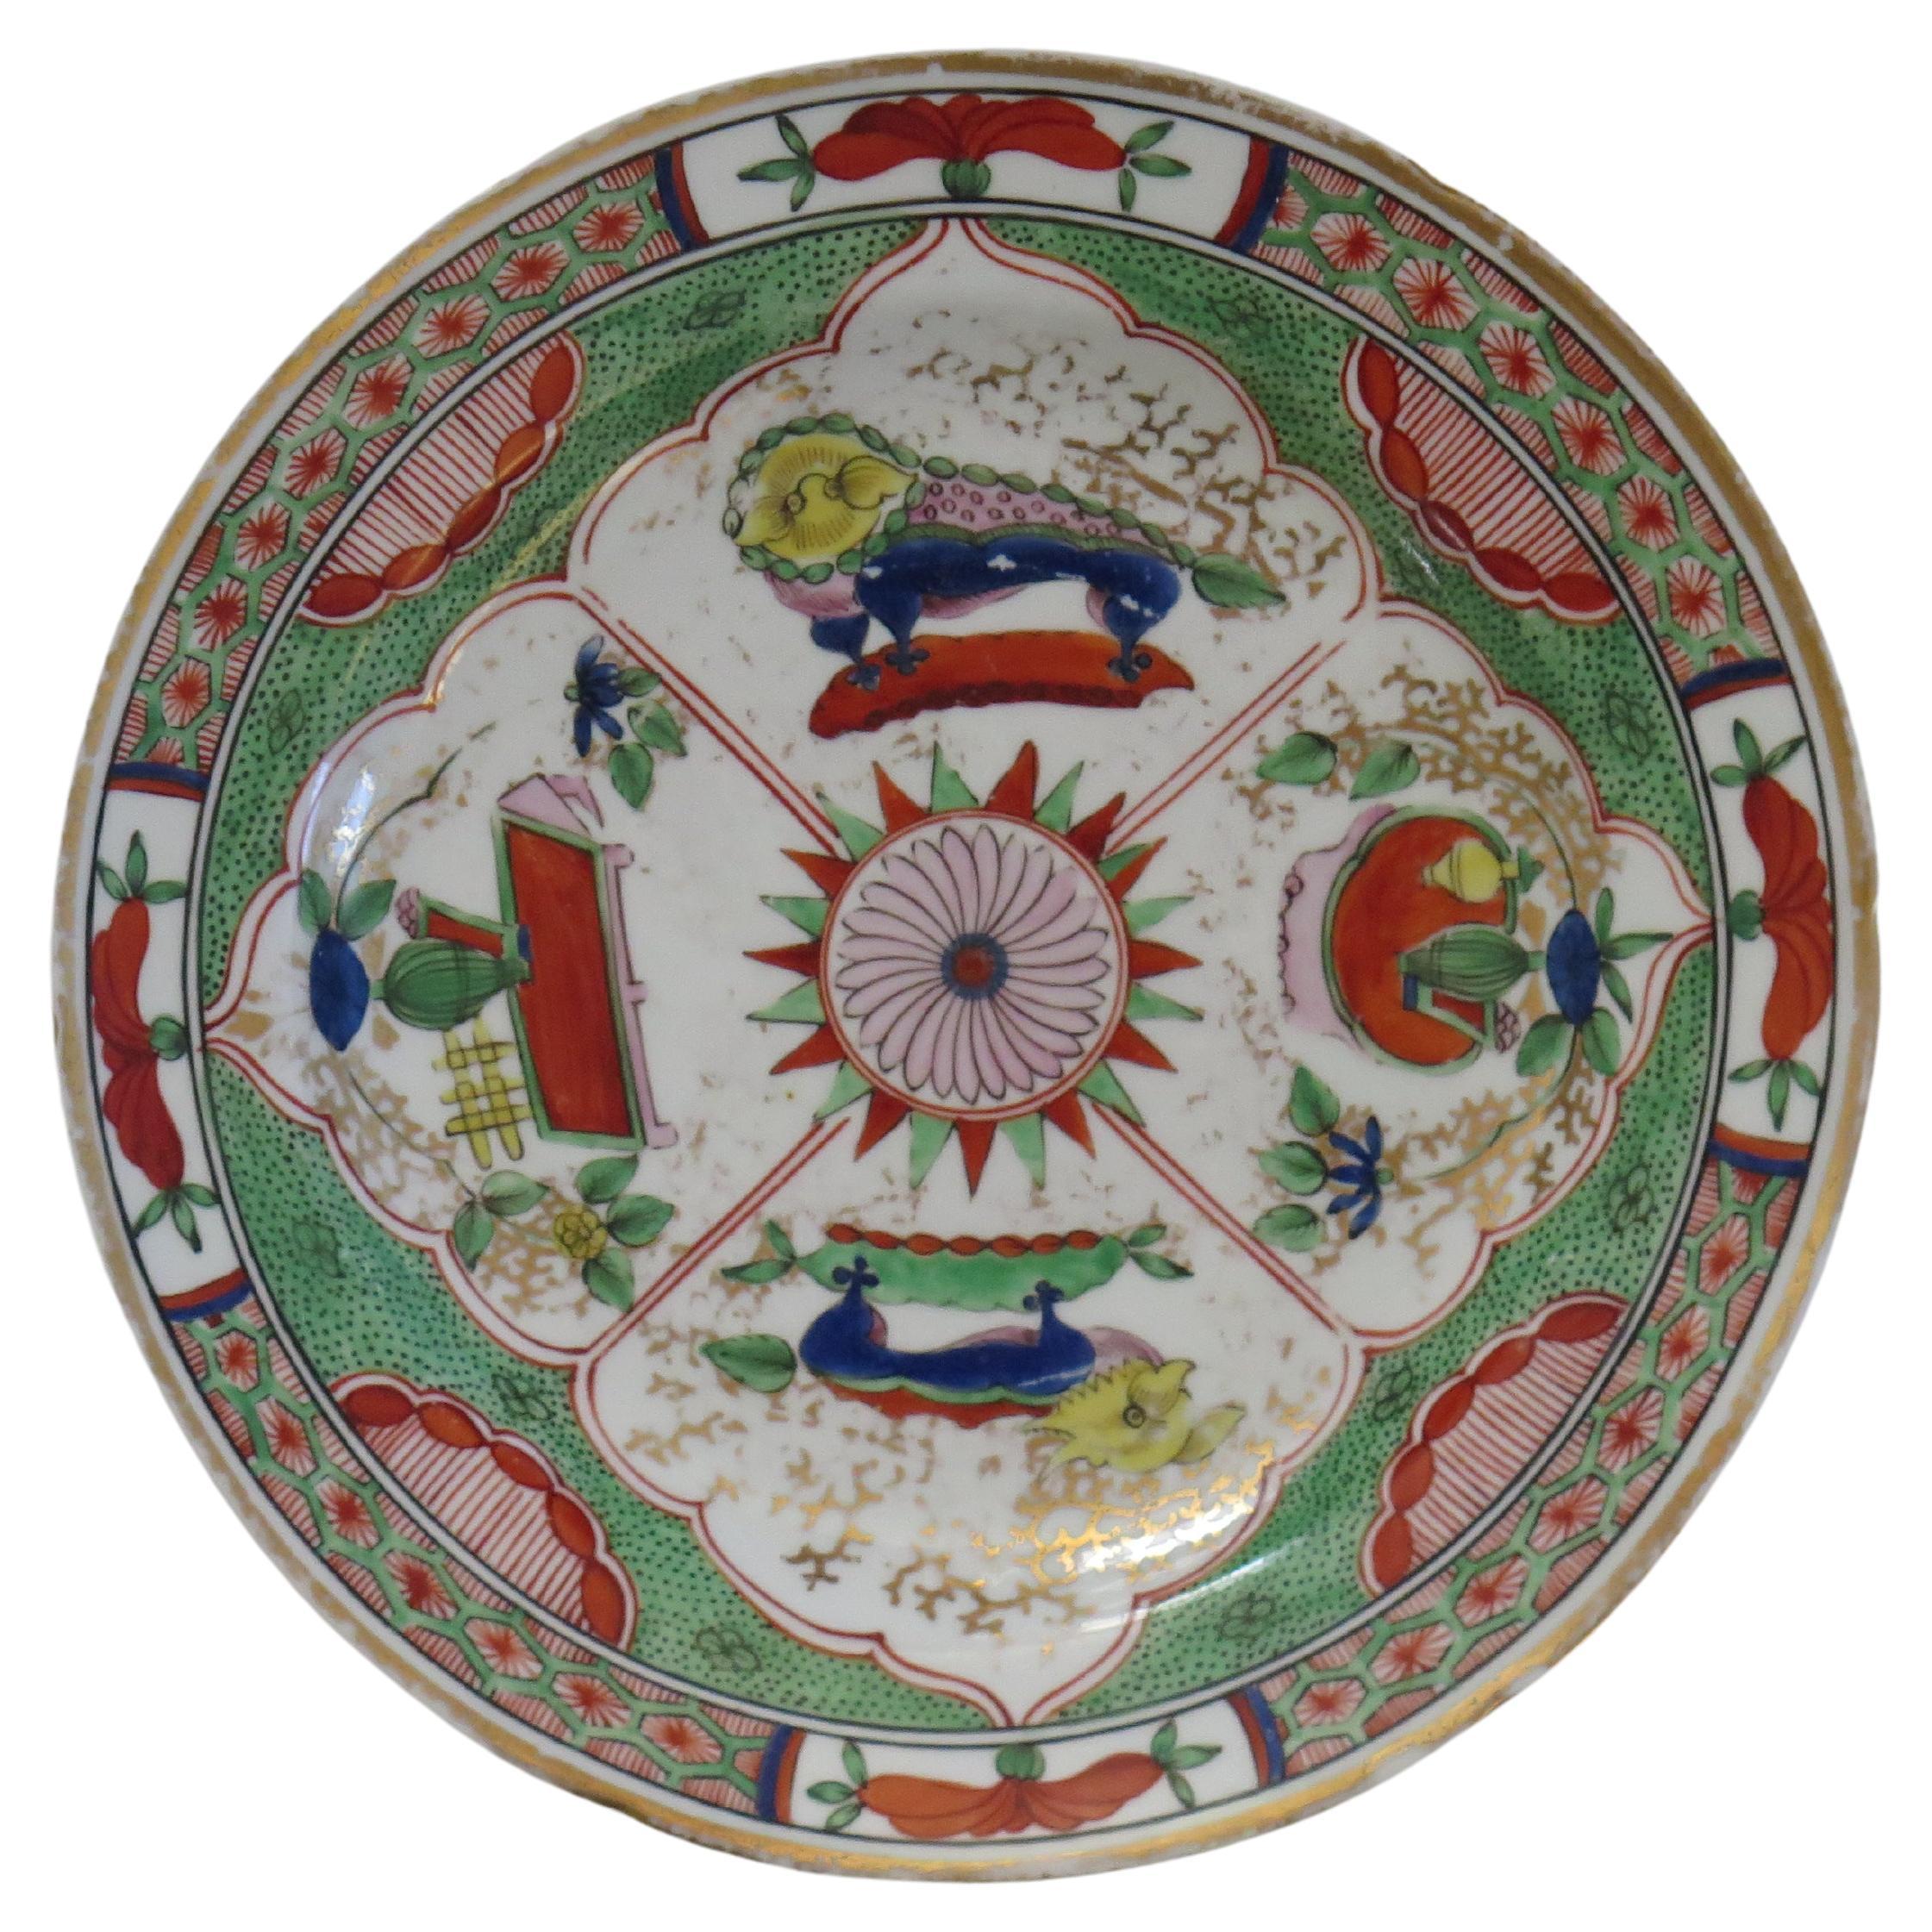 Il s'agit d'une assiette ou d'un plat en porcelaine de bonne qualité, entièrement peint à la main dans le motif du dragon dans les compartiments, numéro 75, par Chamberlains Worcester, datant de l'année George 111, vers 1800.

Ce motif distinctif,